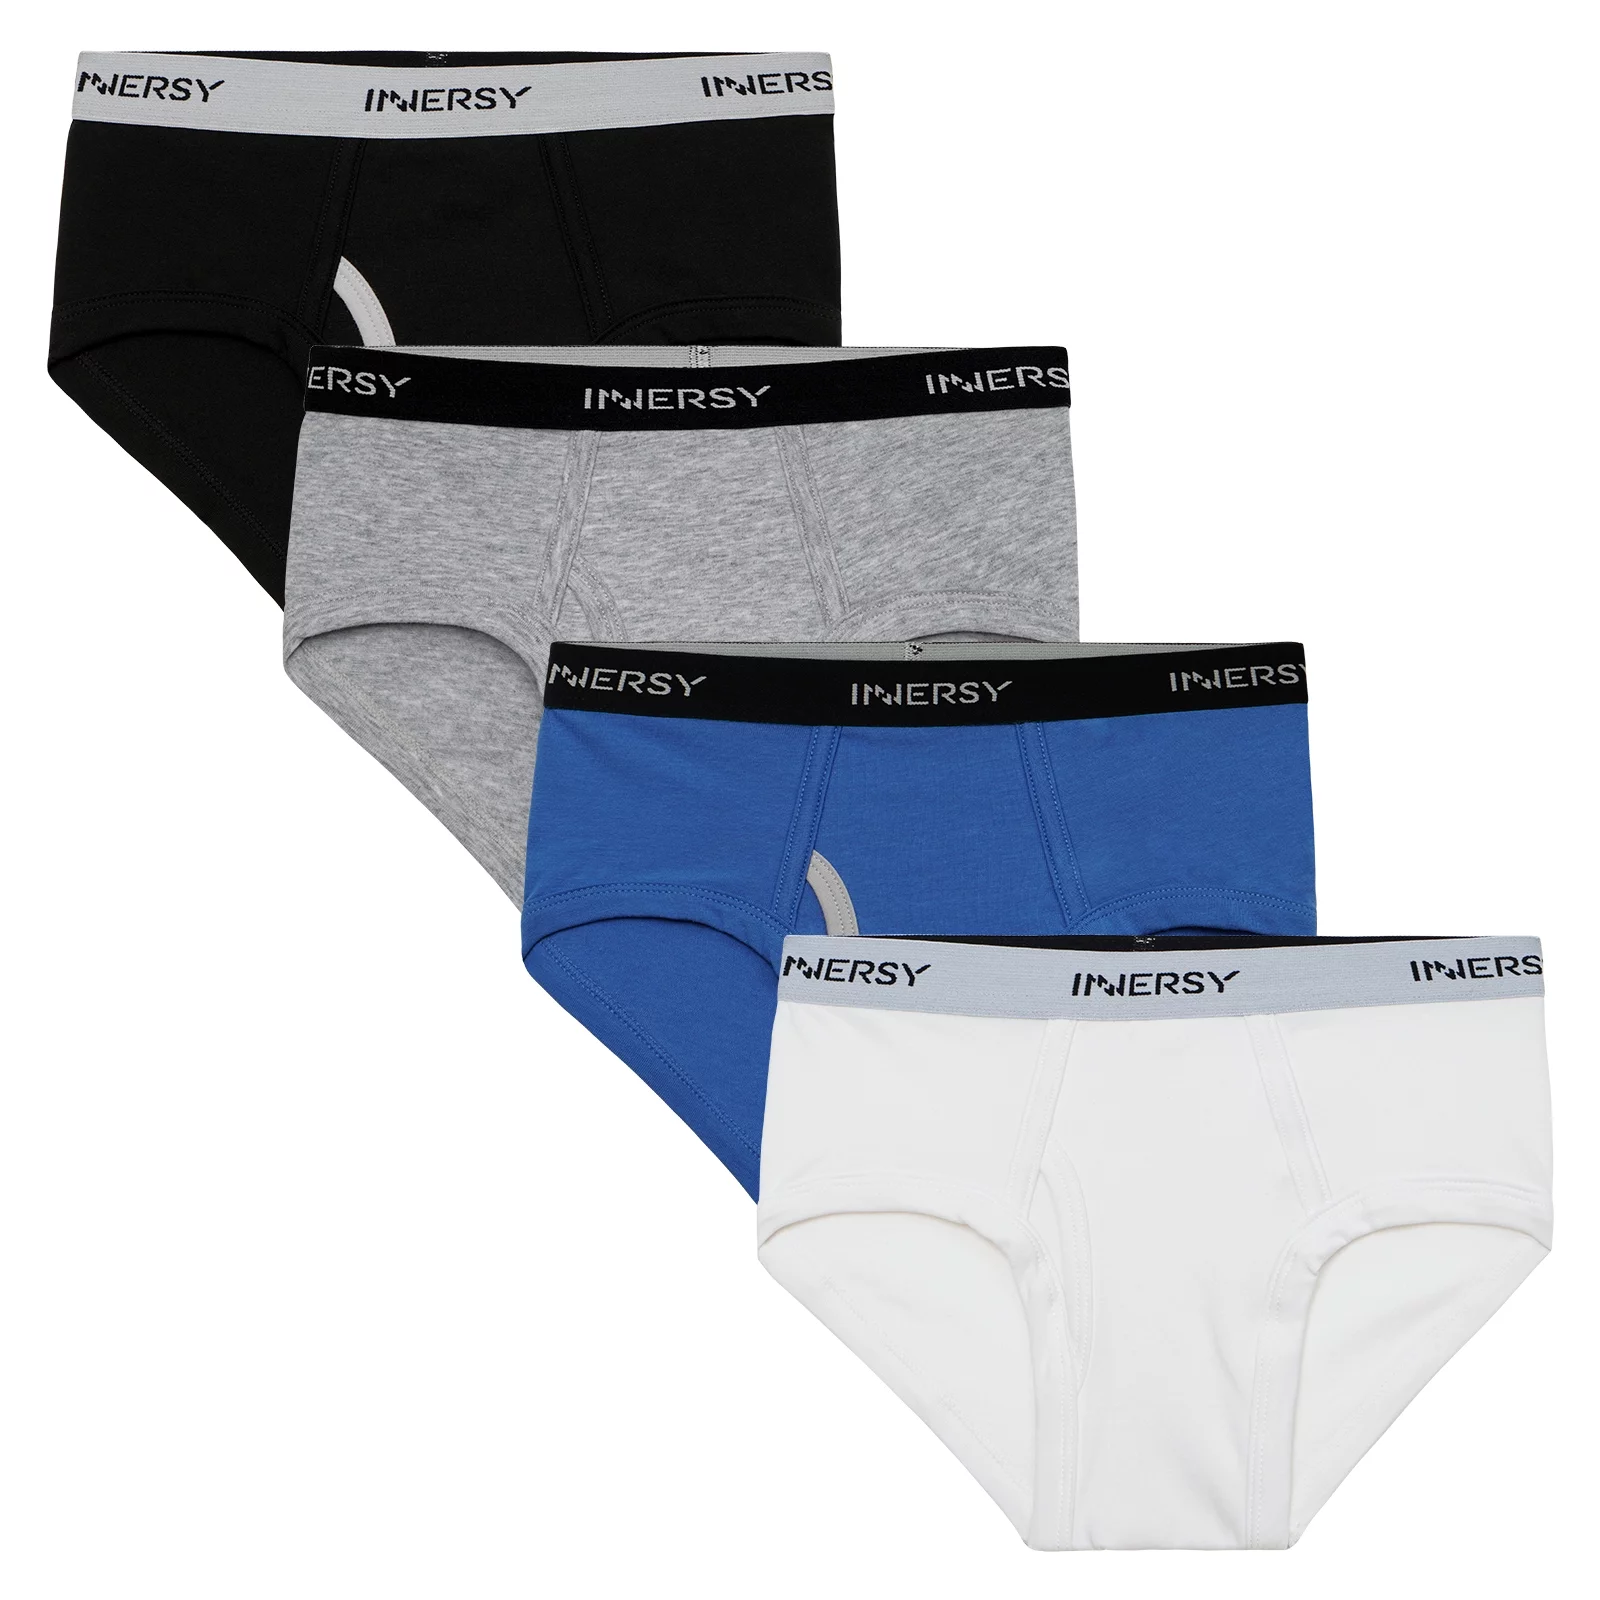 INNERSY Boys Underwear Soft Cotton Boy's Briefs 4 Pack